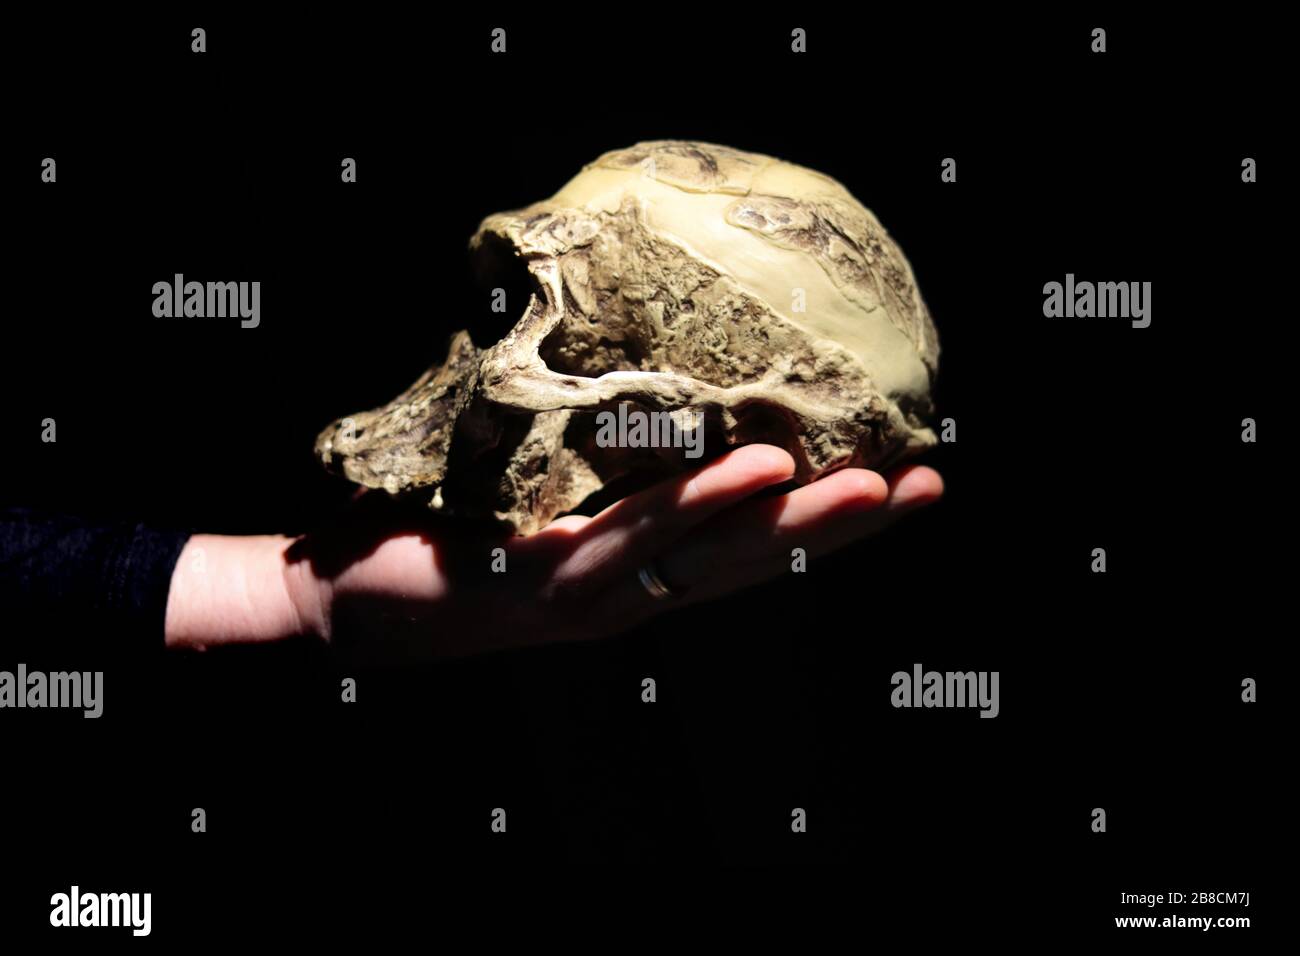 Modell des menschlichen Ahnenschädels (Australopithecus africanus) an der Hand. Dunkler Hintergrund. Stockfoto